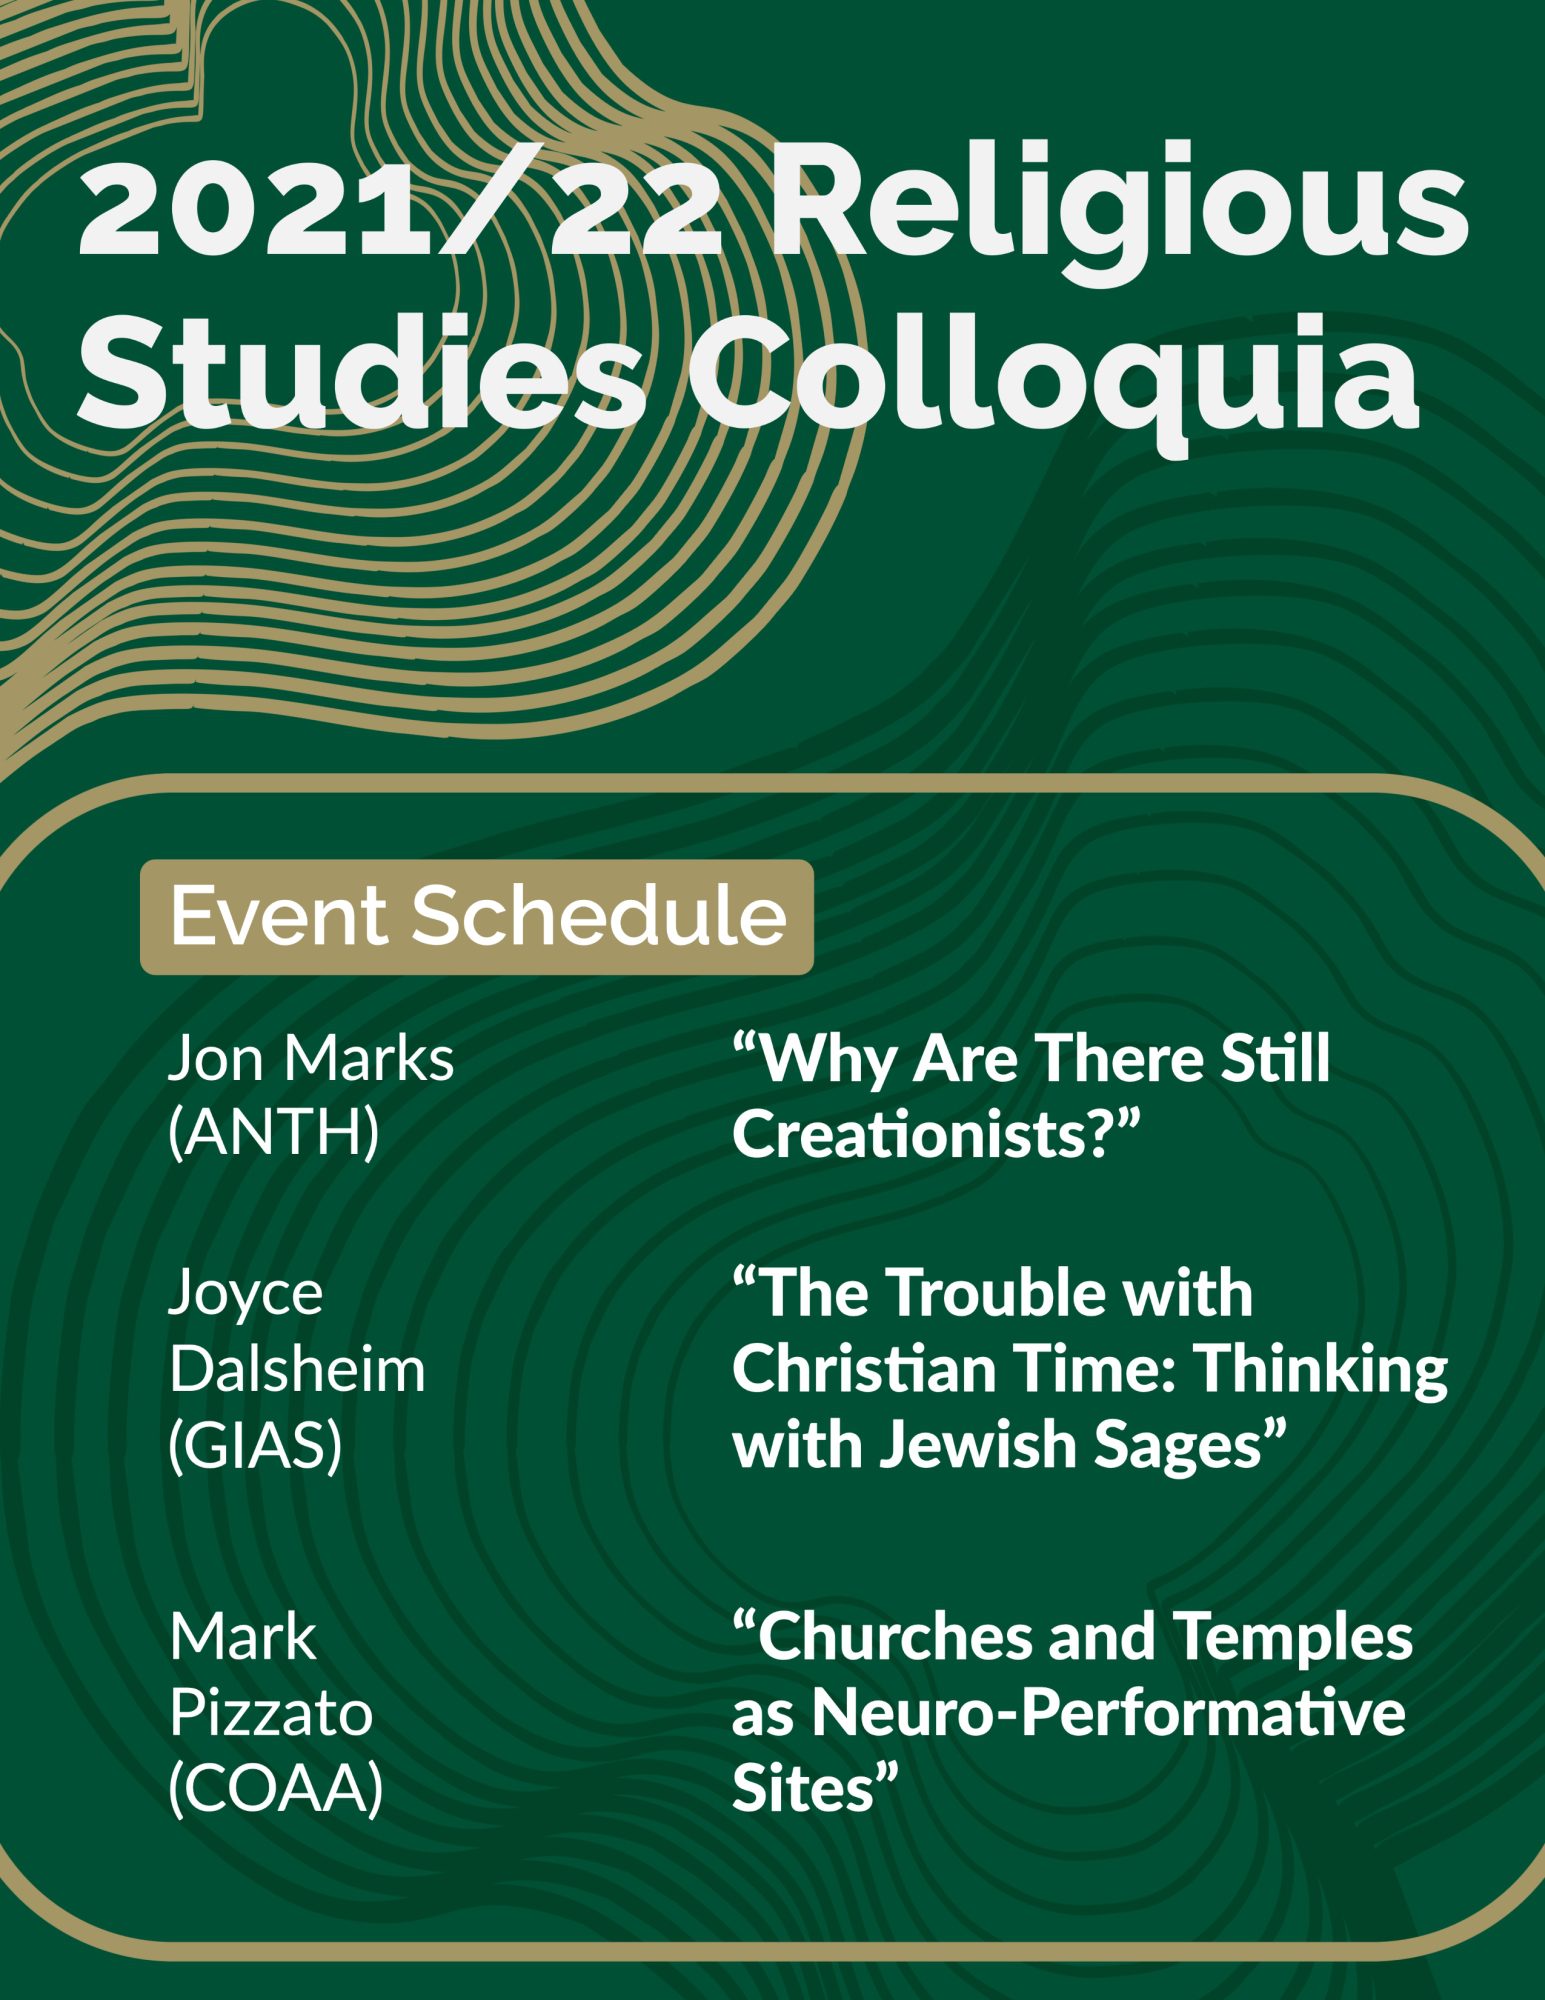 2021/22 Religious Studies Colloquia
Event Schedule